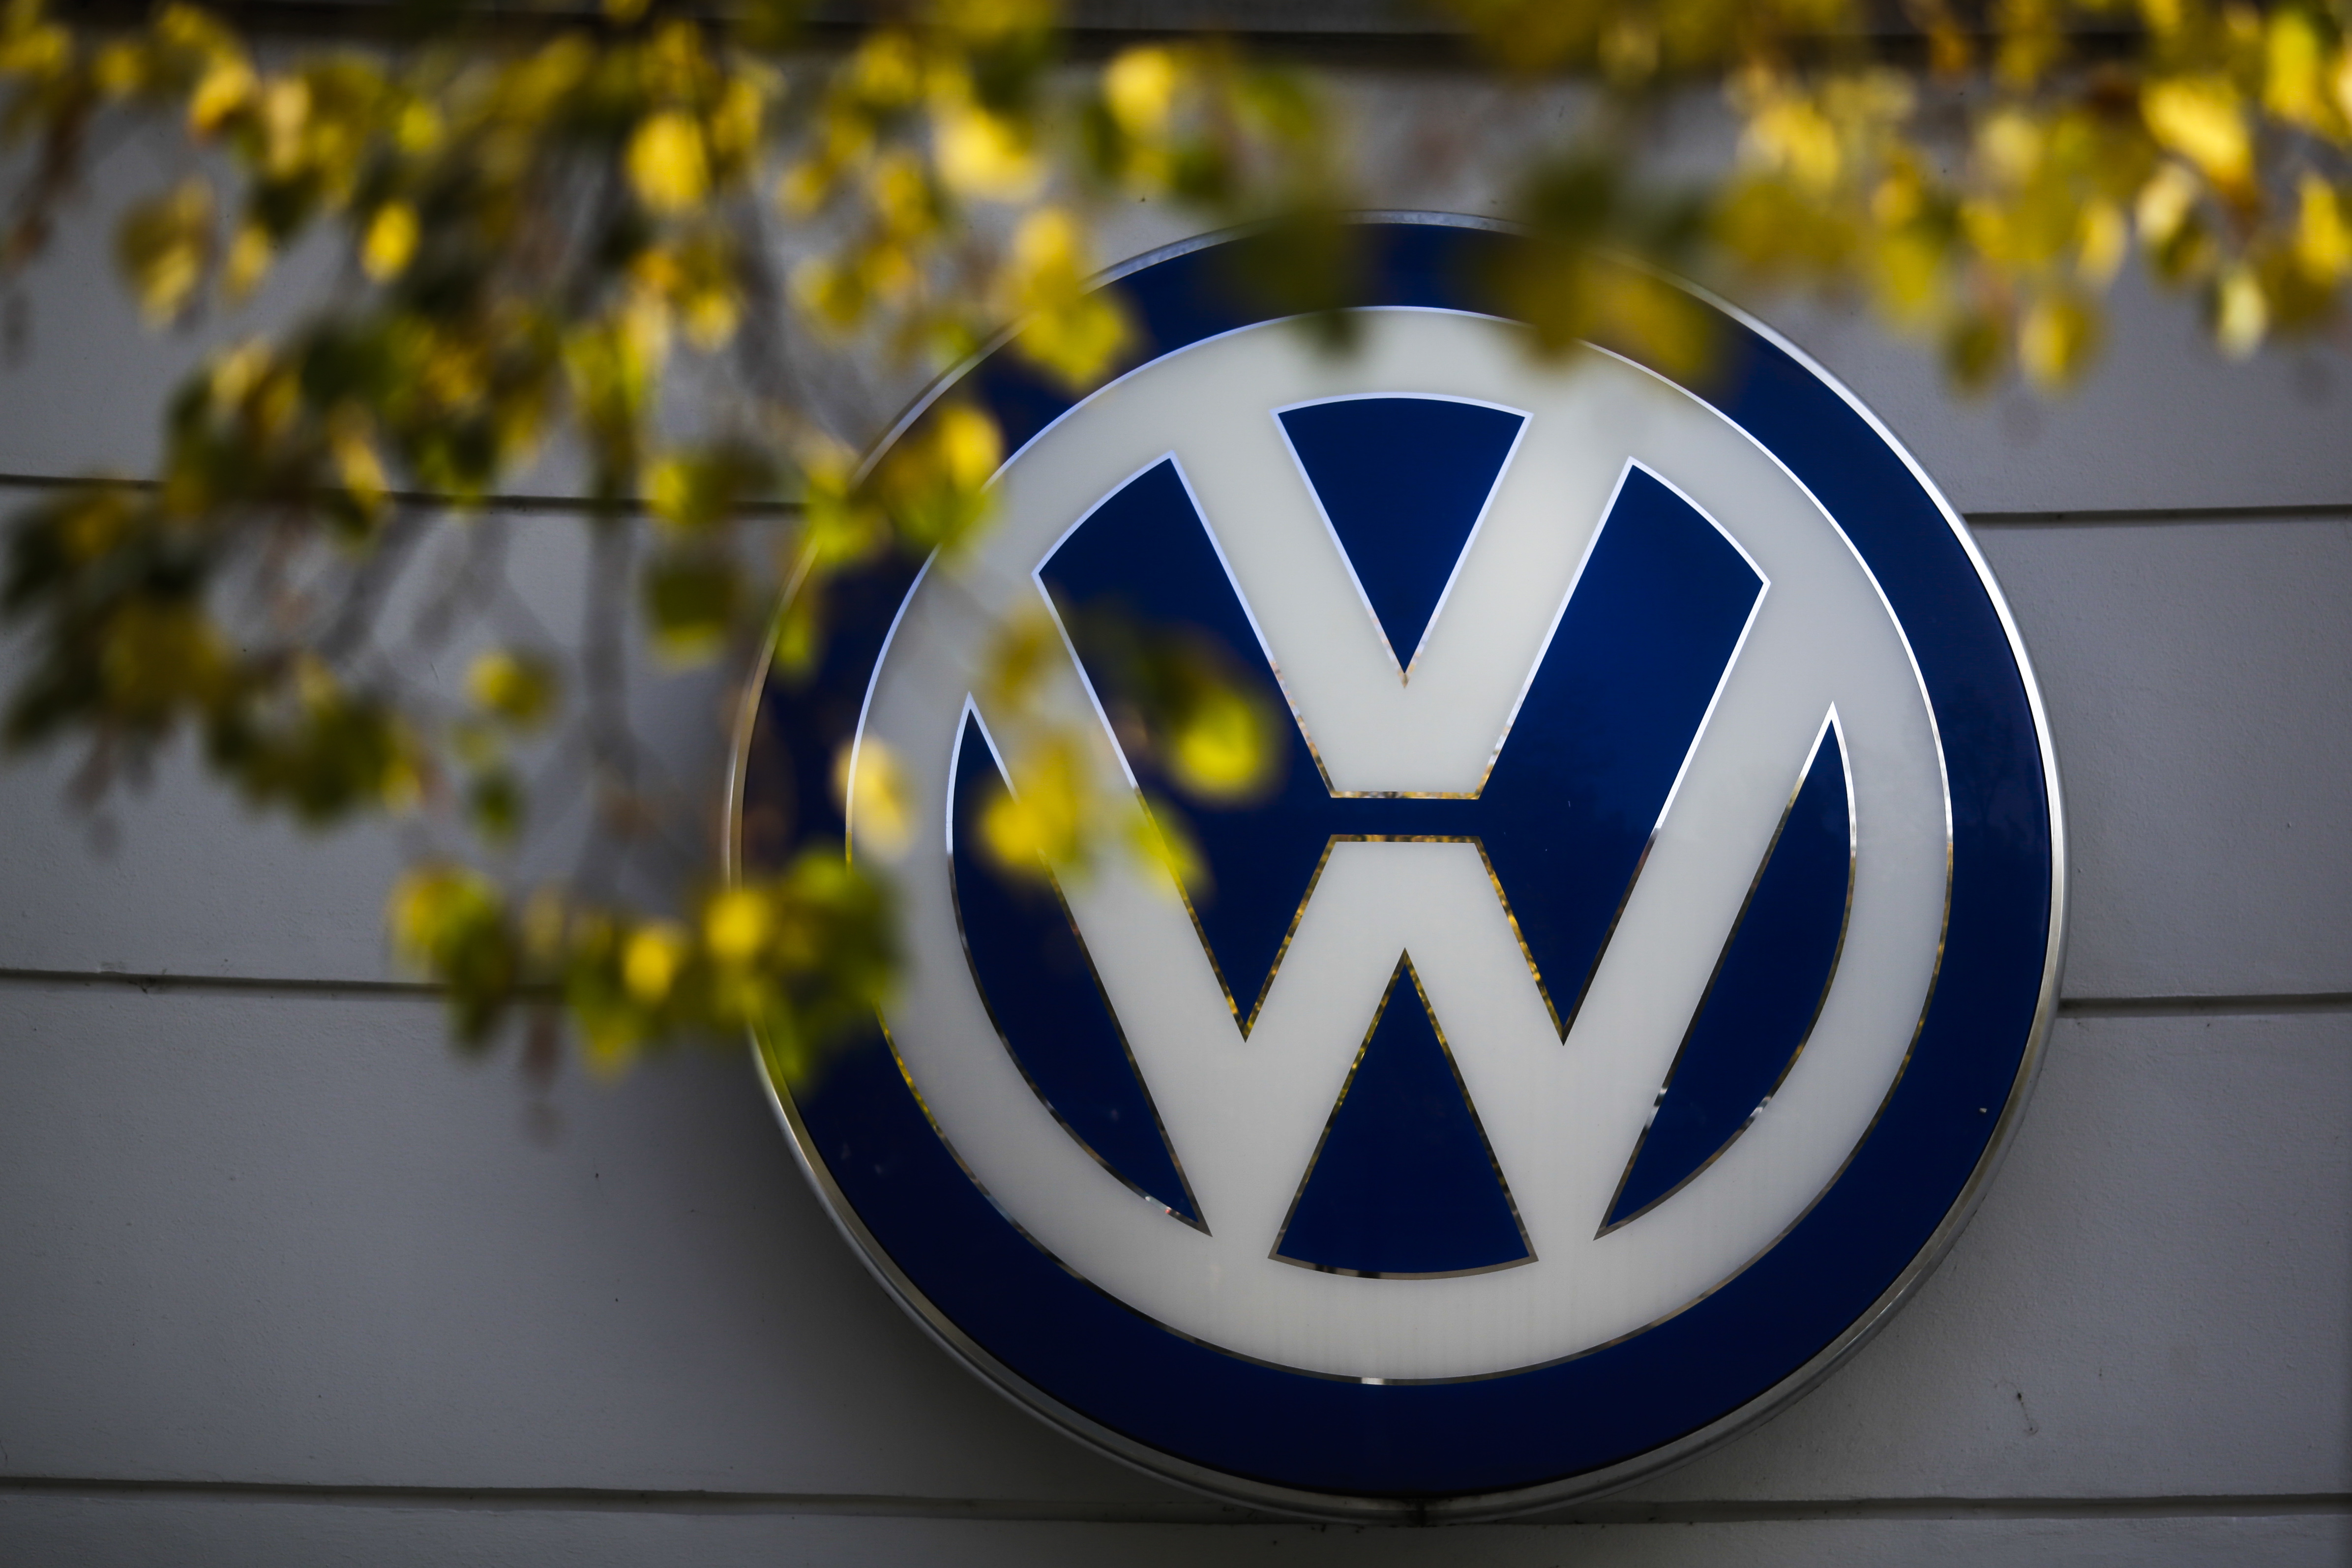 Austria también llamará a propietarios de autos Volkskwagen